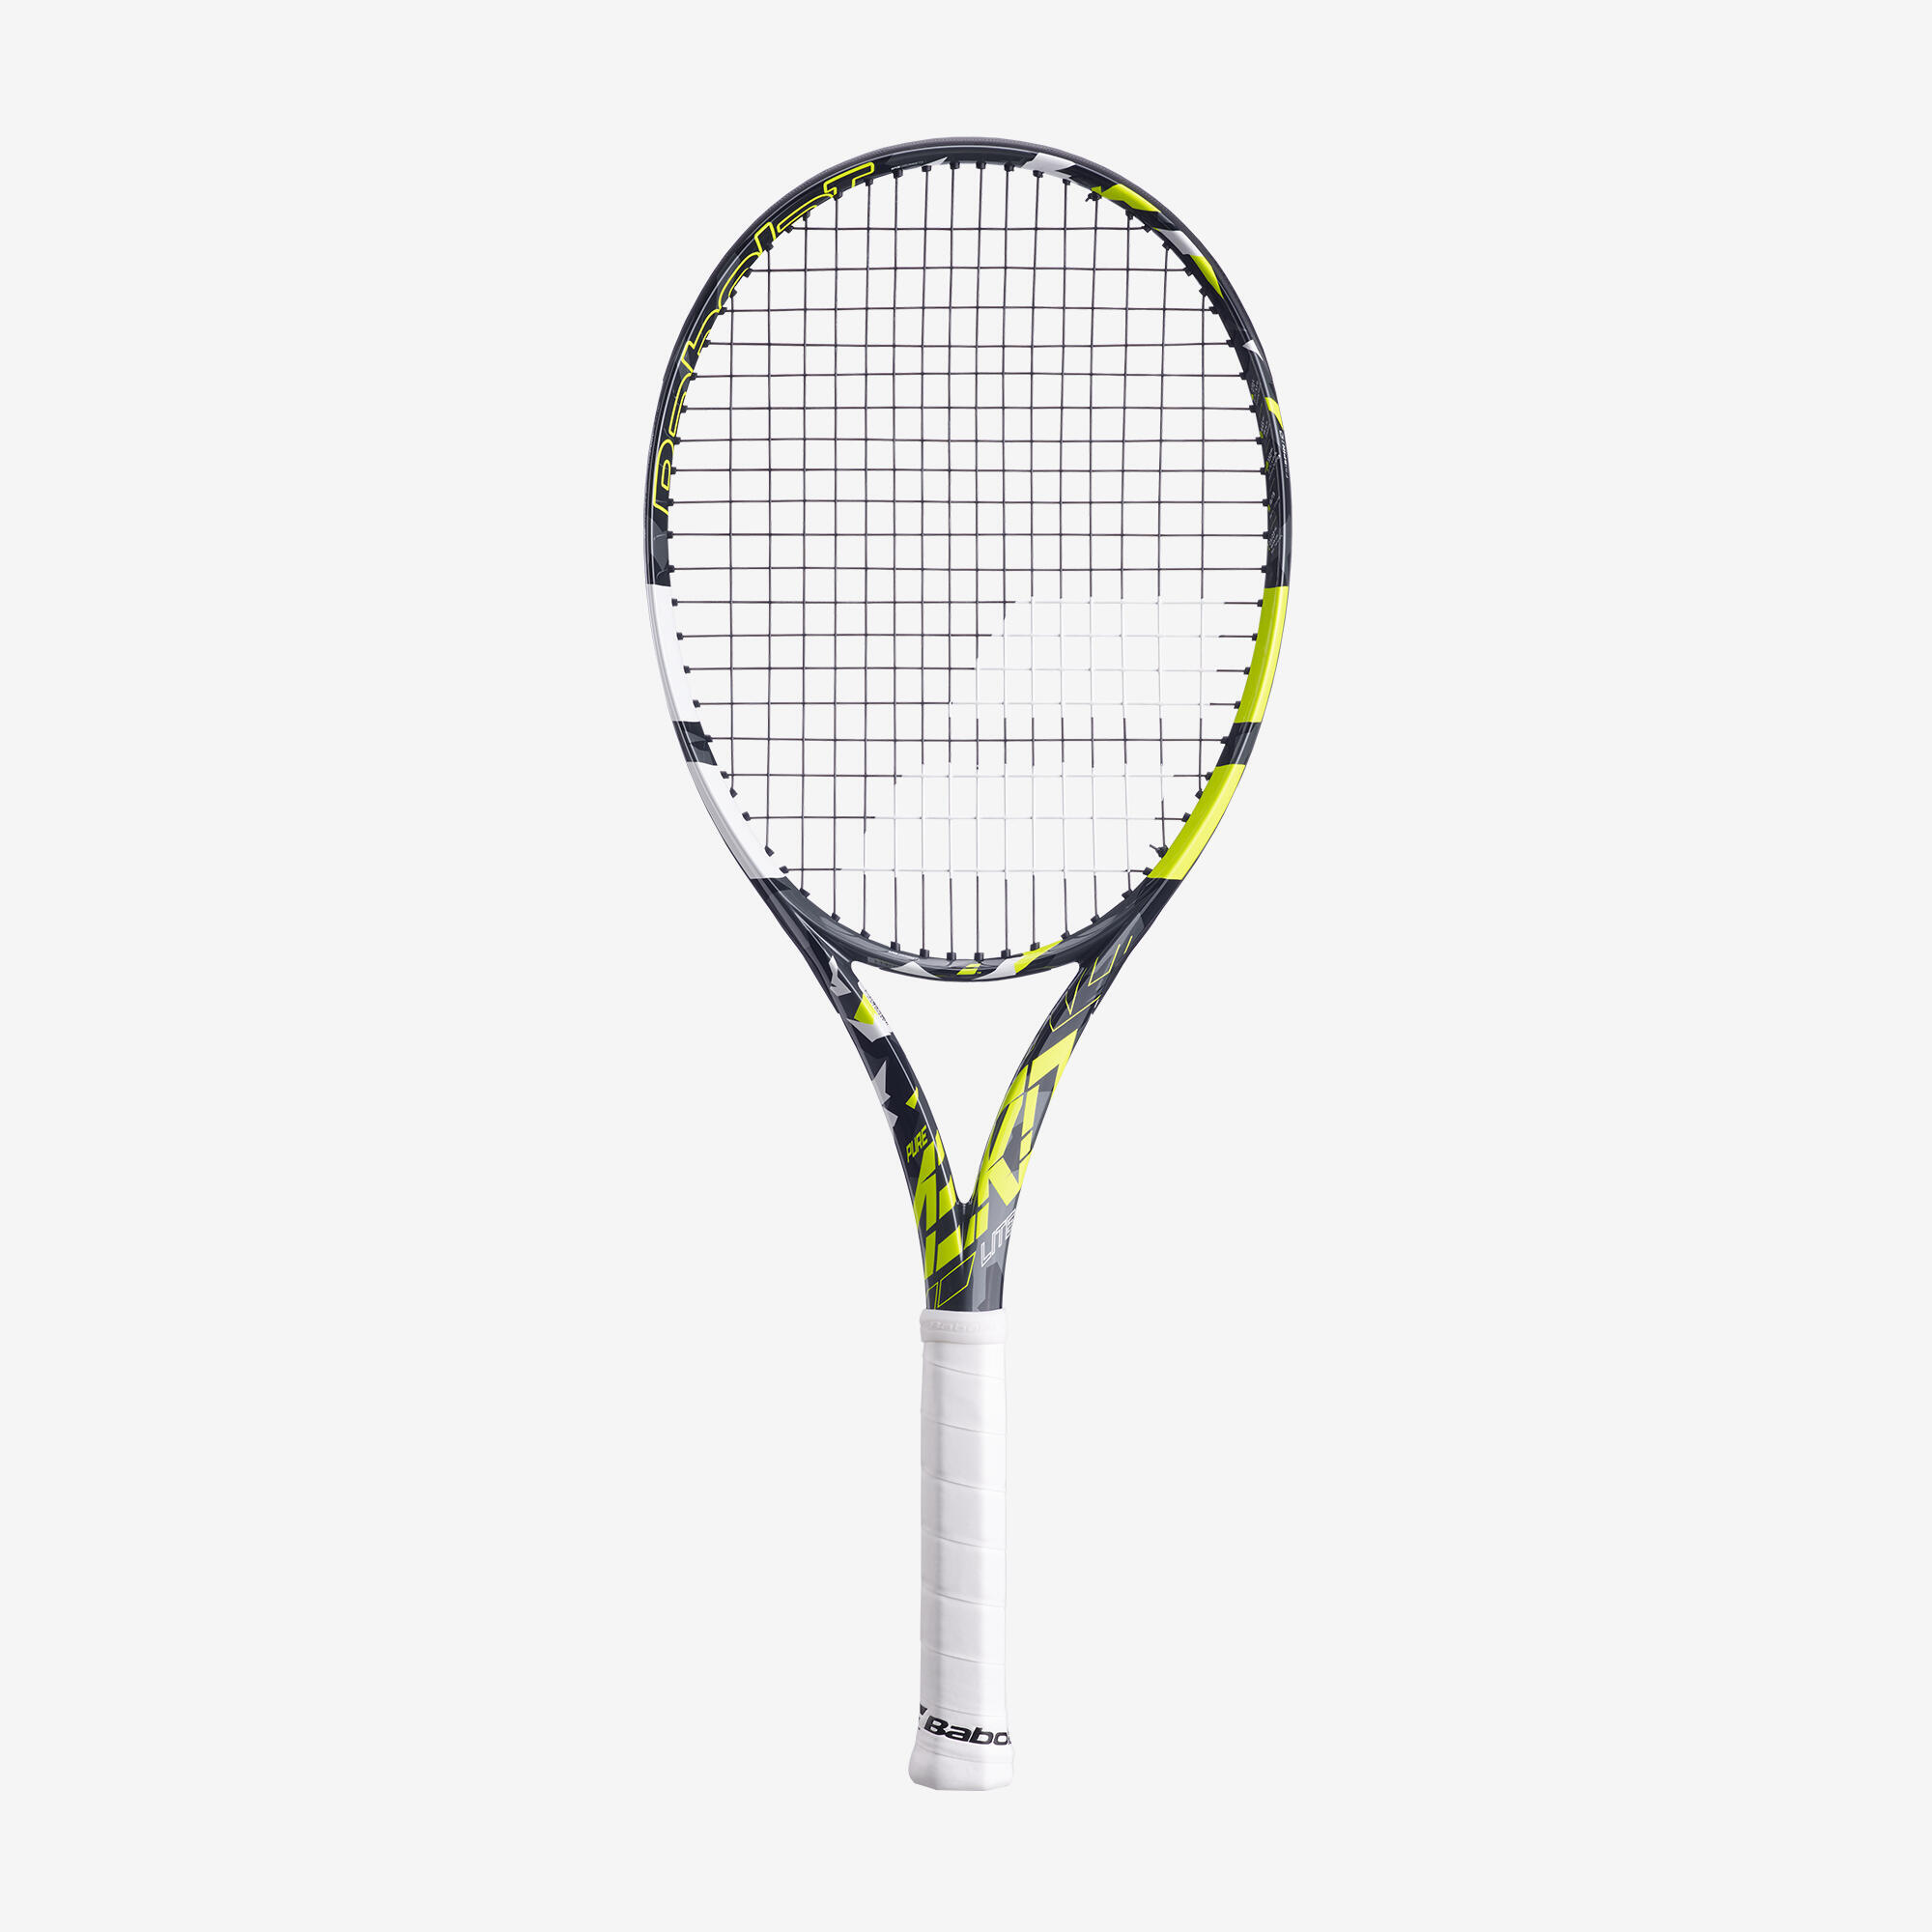 Ракетка теннисная взрослая Baboloat - Pure Aero Lite Grey/Yellow 270 г BABOLAT, темно-серый/неоново-желтый/белый ракетка для большого тенниса детская babolat aero junior 26 желтый